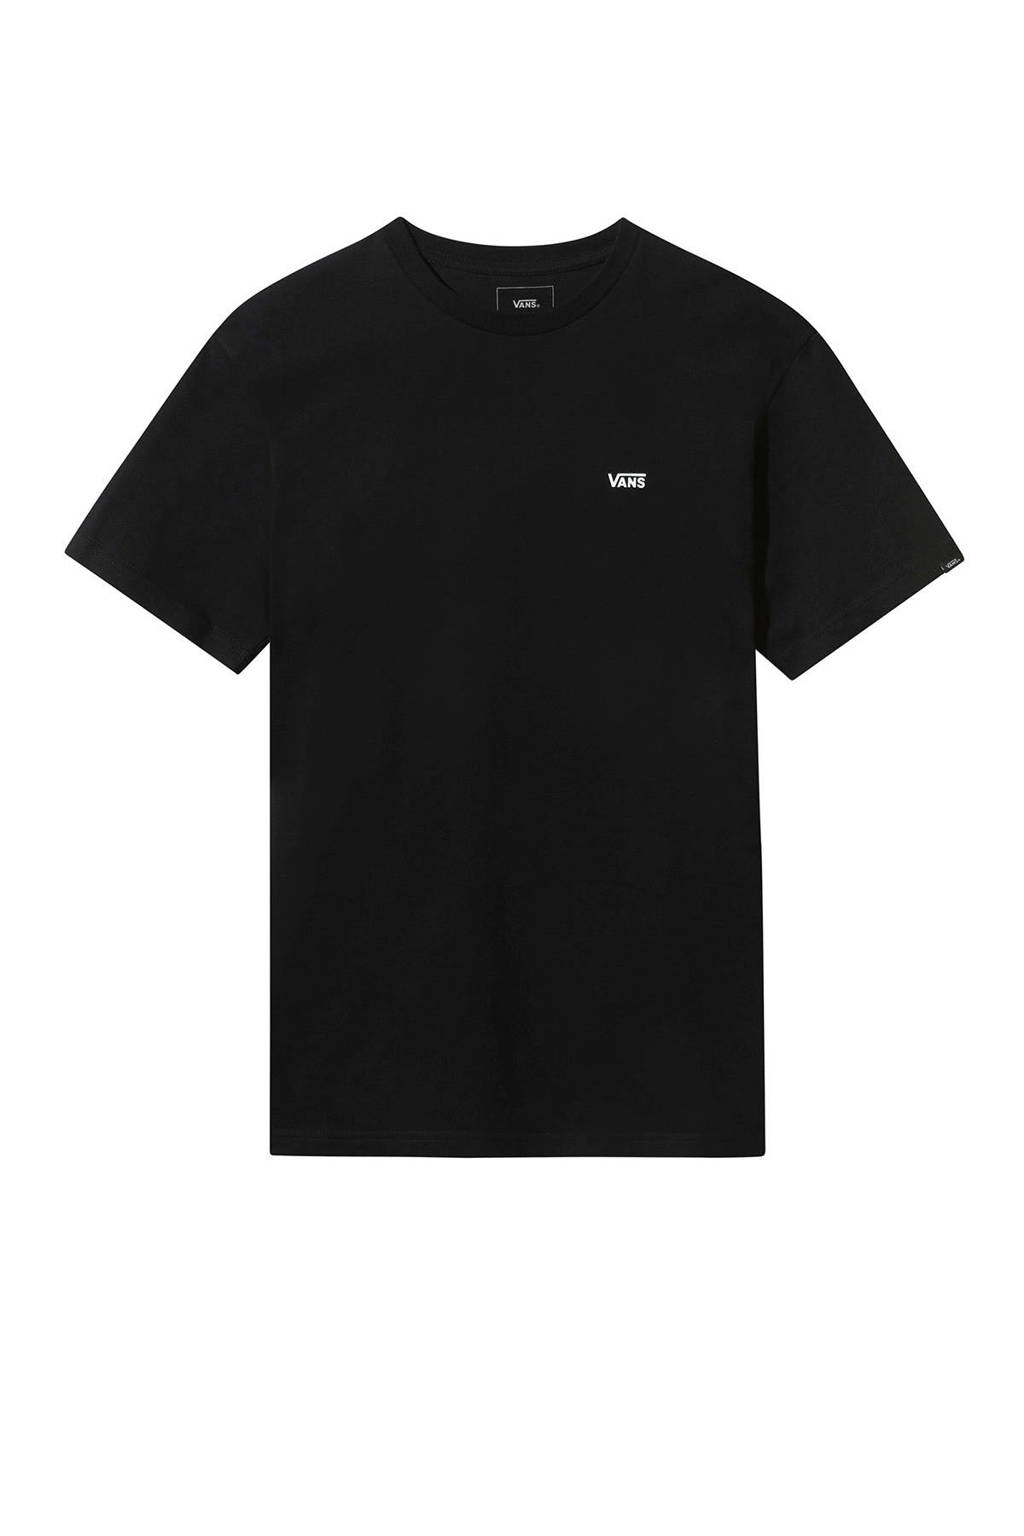 VANS T-shirt zwart, Zwart